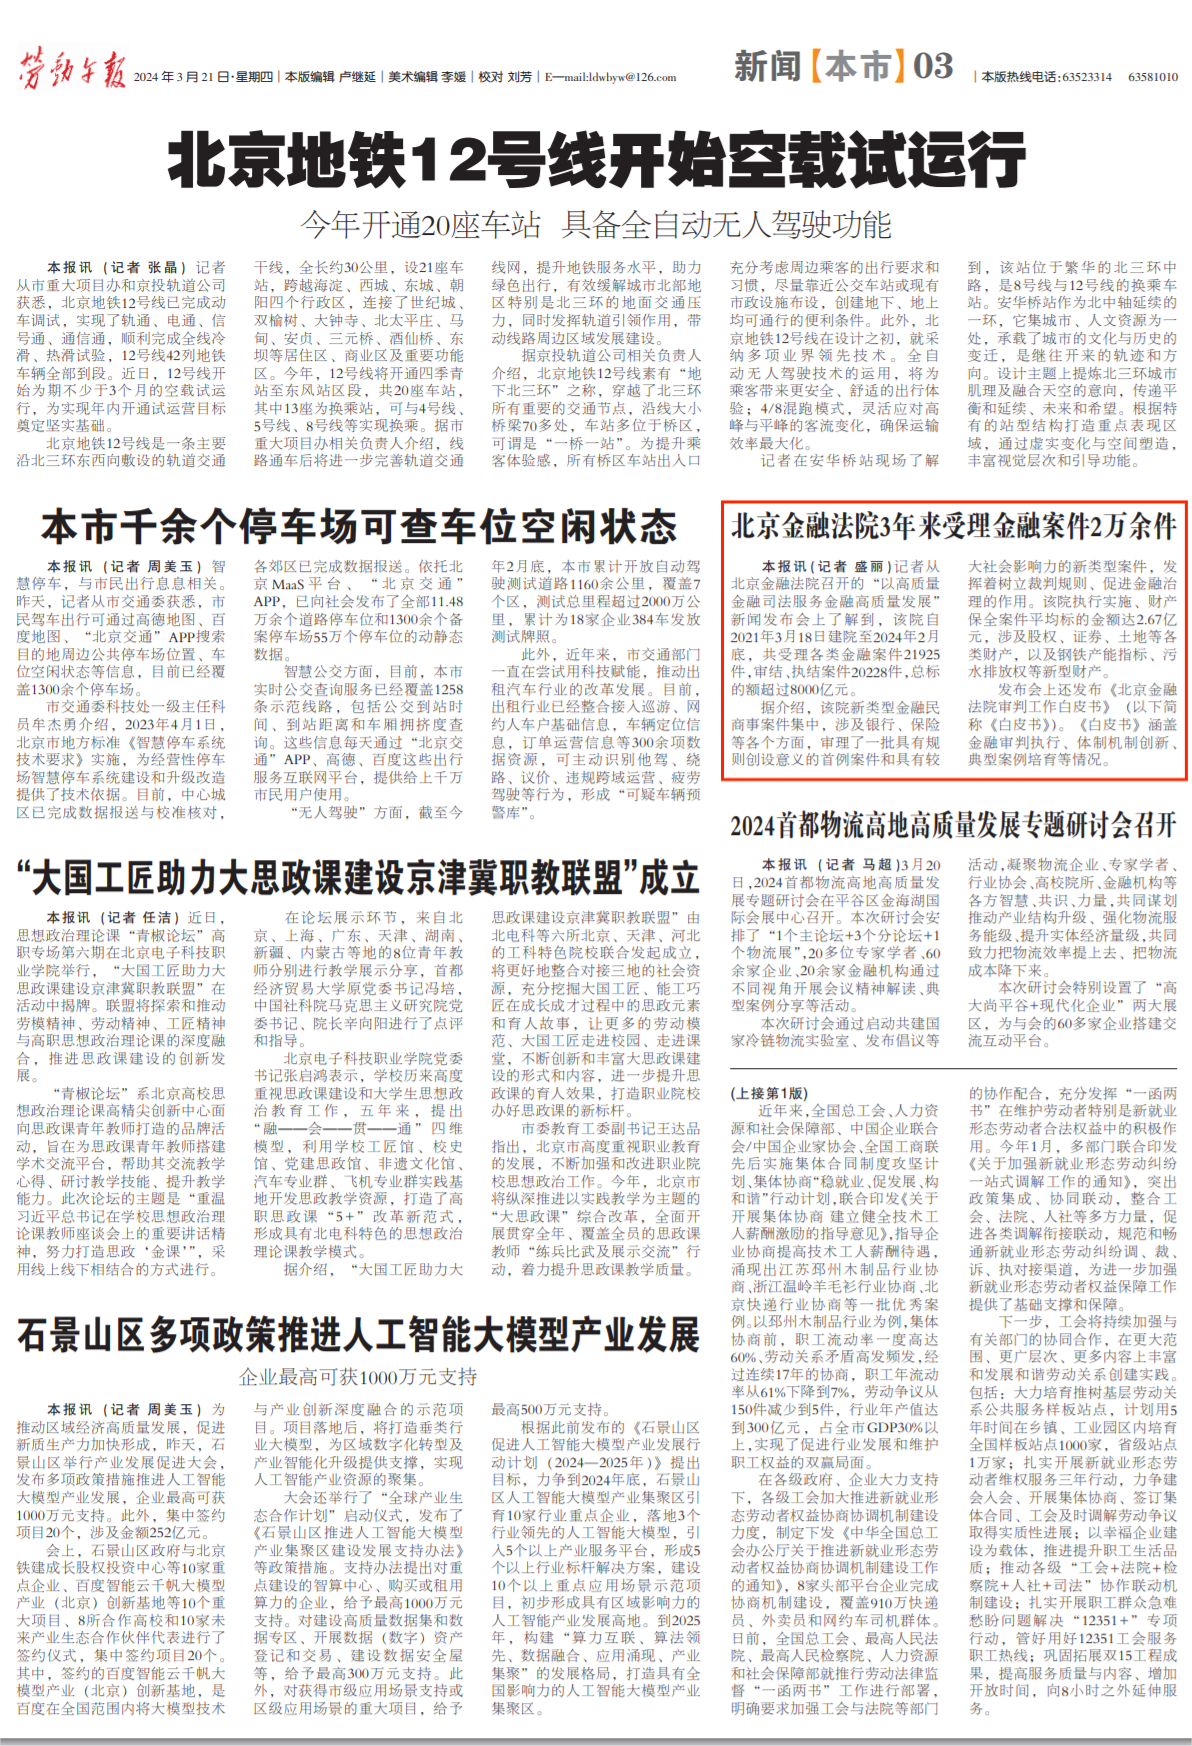 3.21劳动午报：北京金融法院3年来受理金融案件2万余件.png